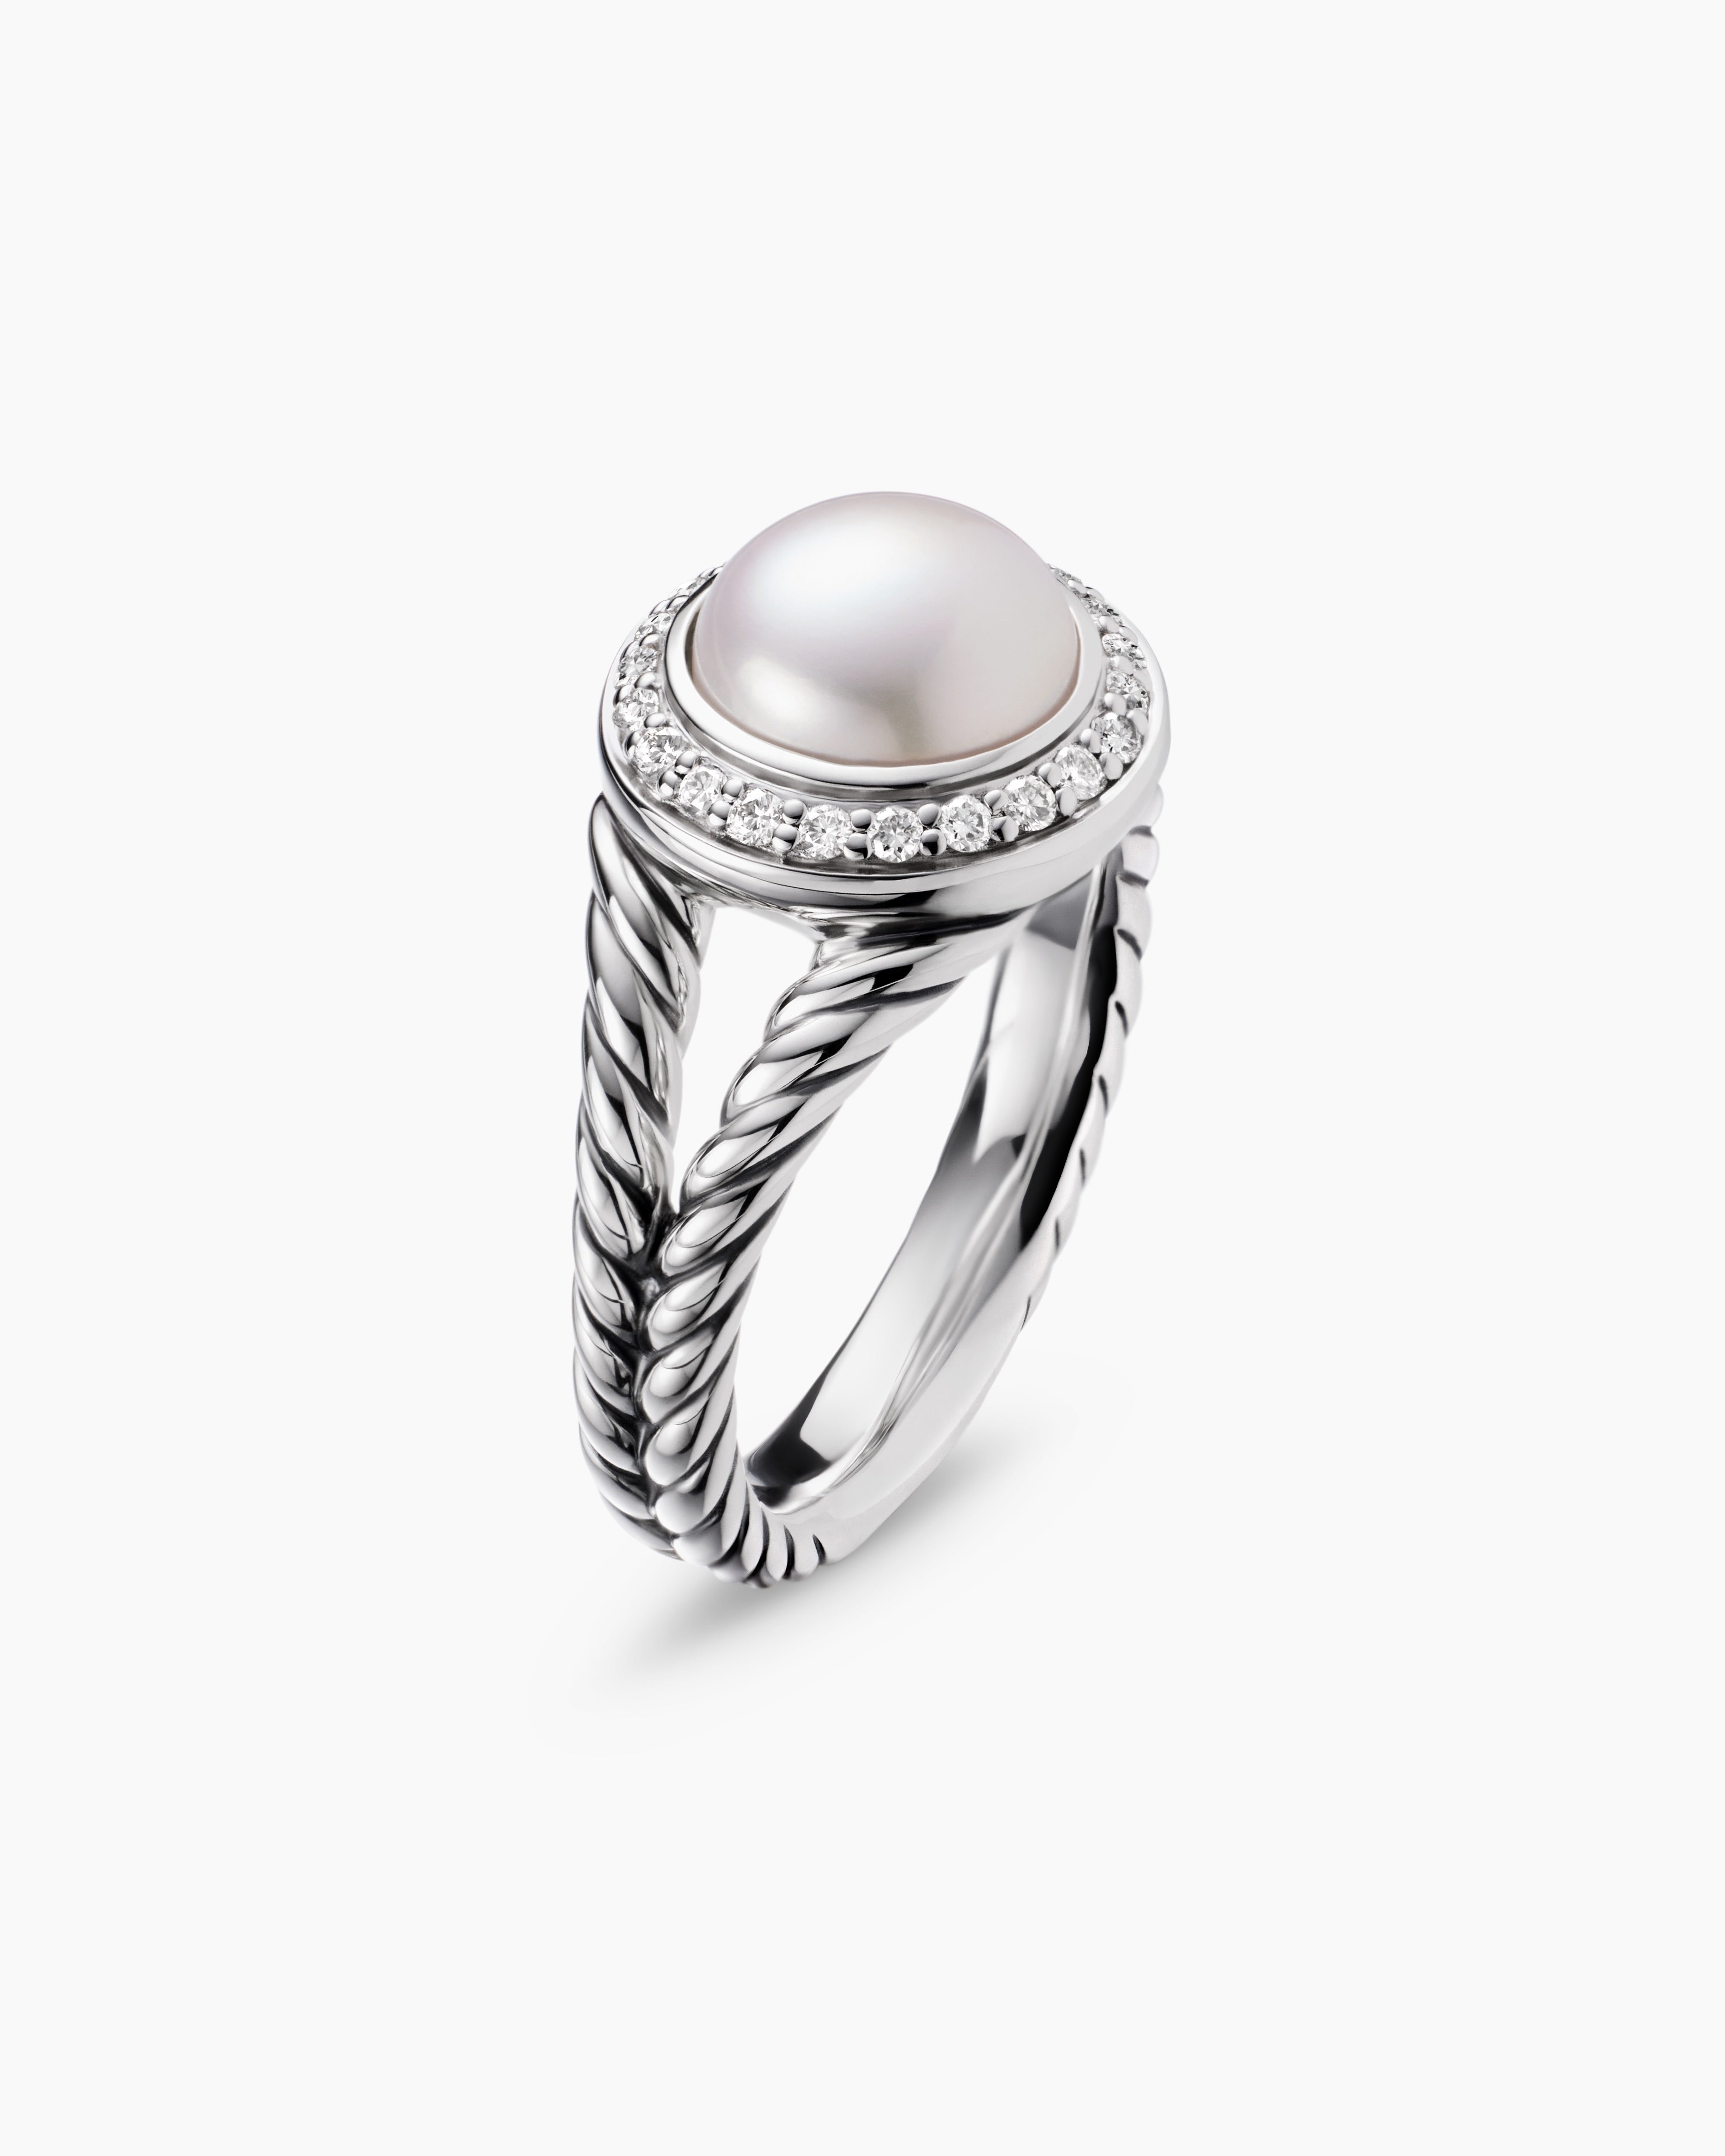 David Yurman Petite Pearl Ring with Diamonds - Silver 6